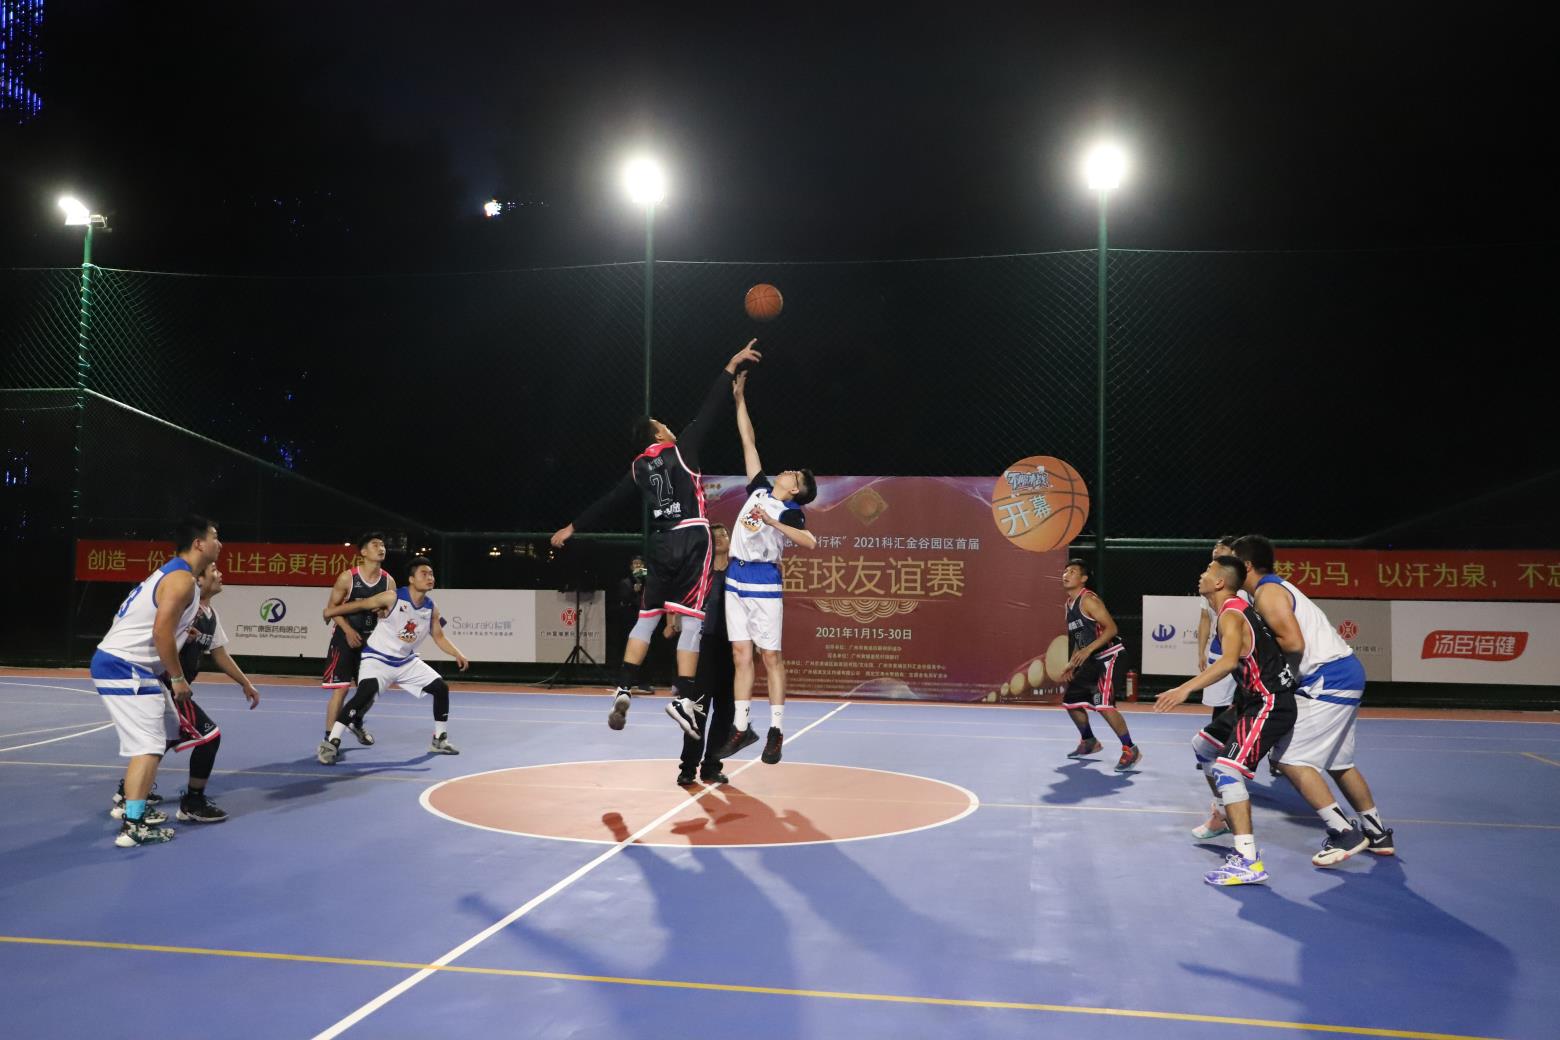 上海体院篮球赛,上海体育学院 篮球